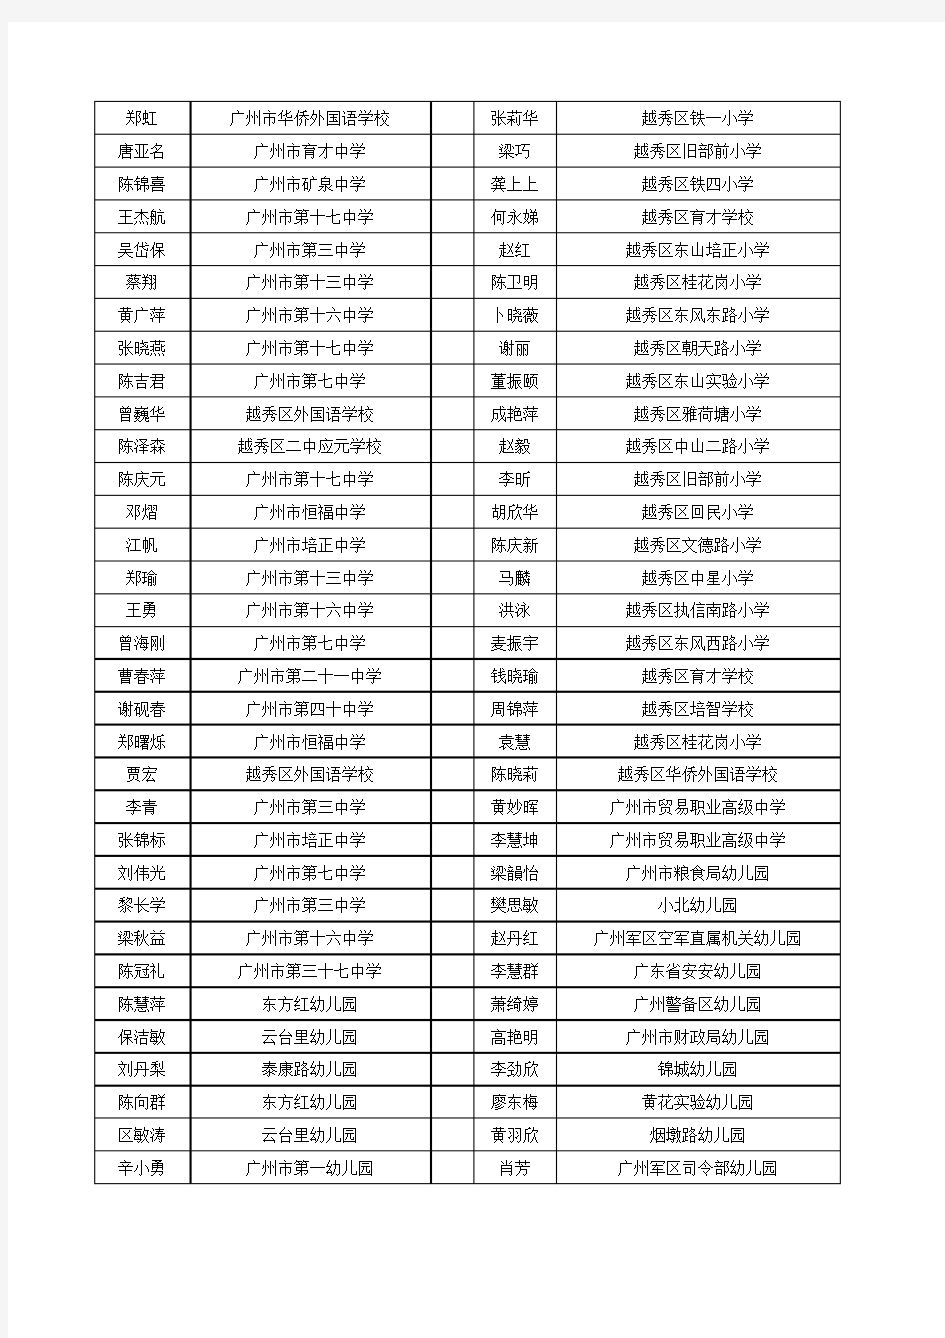 广州市第二批中小学骨干教师名单